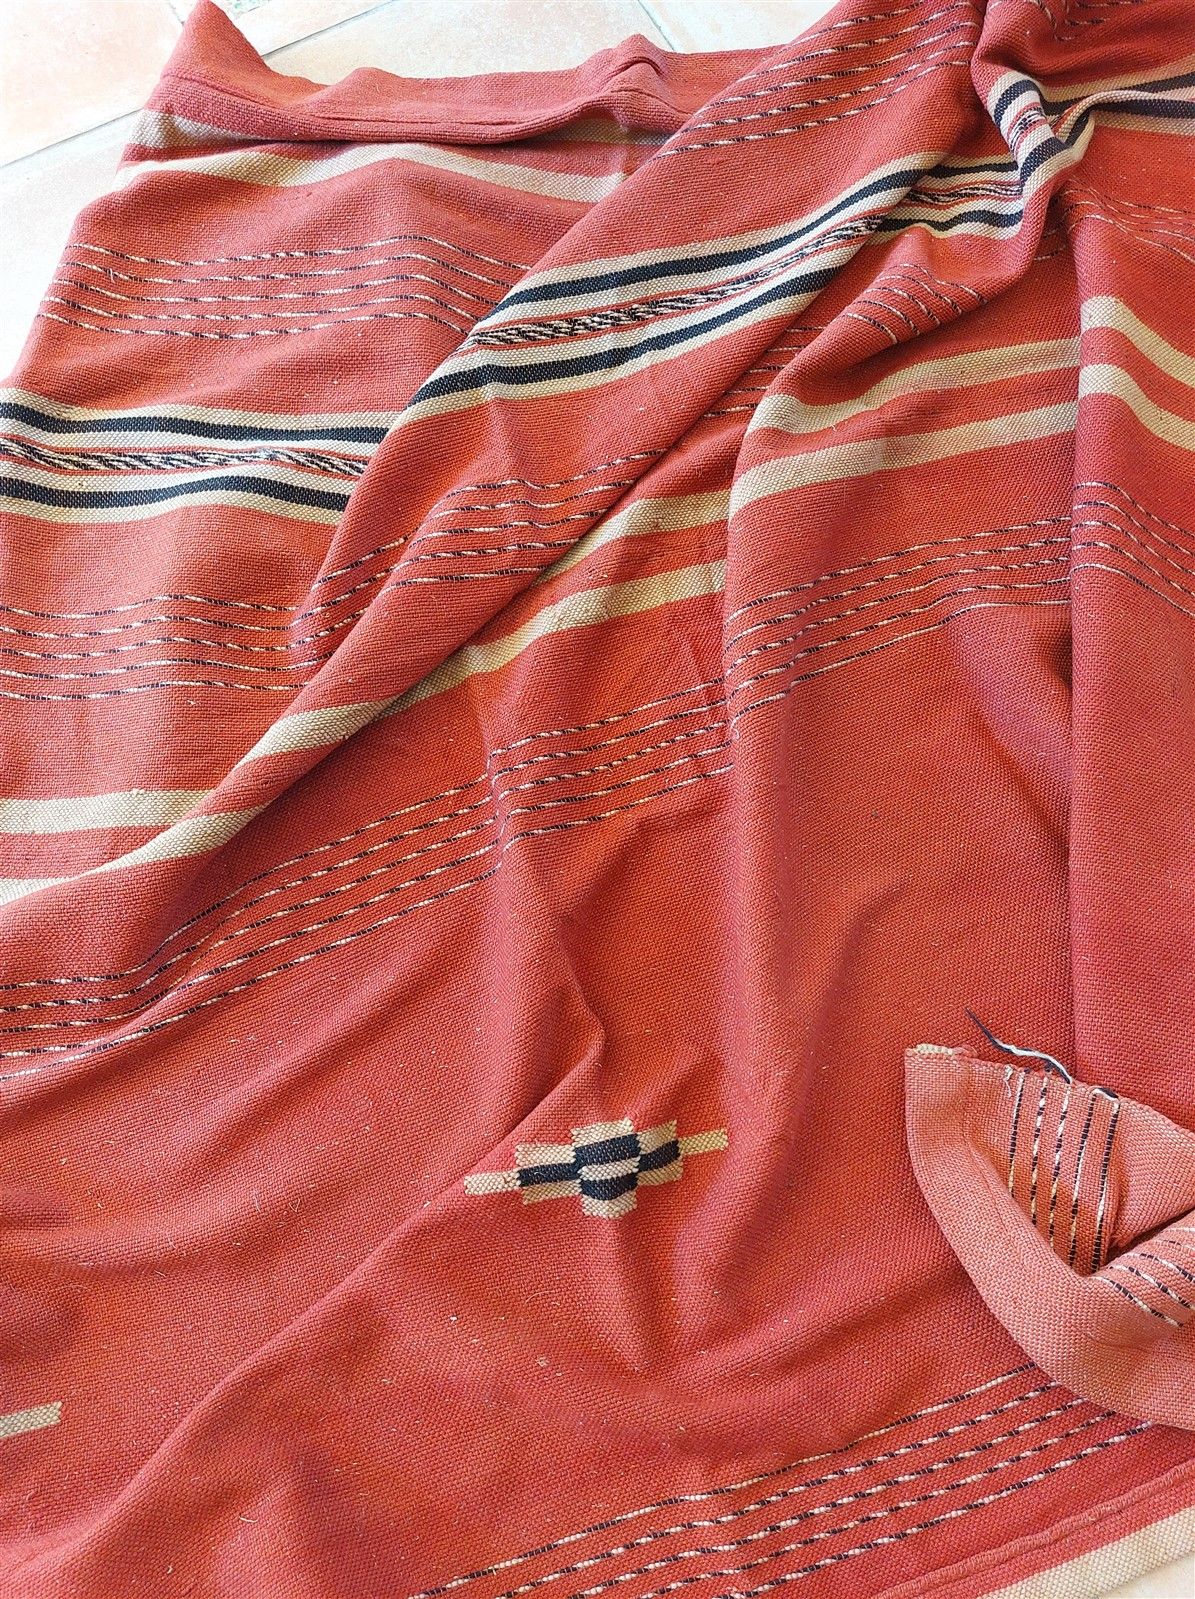 Null 1 ancienne couverture tissée à la main motif Touareg couleur rouge